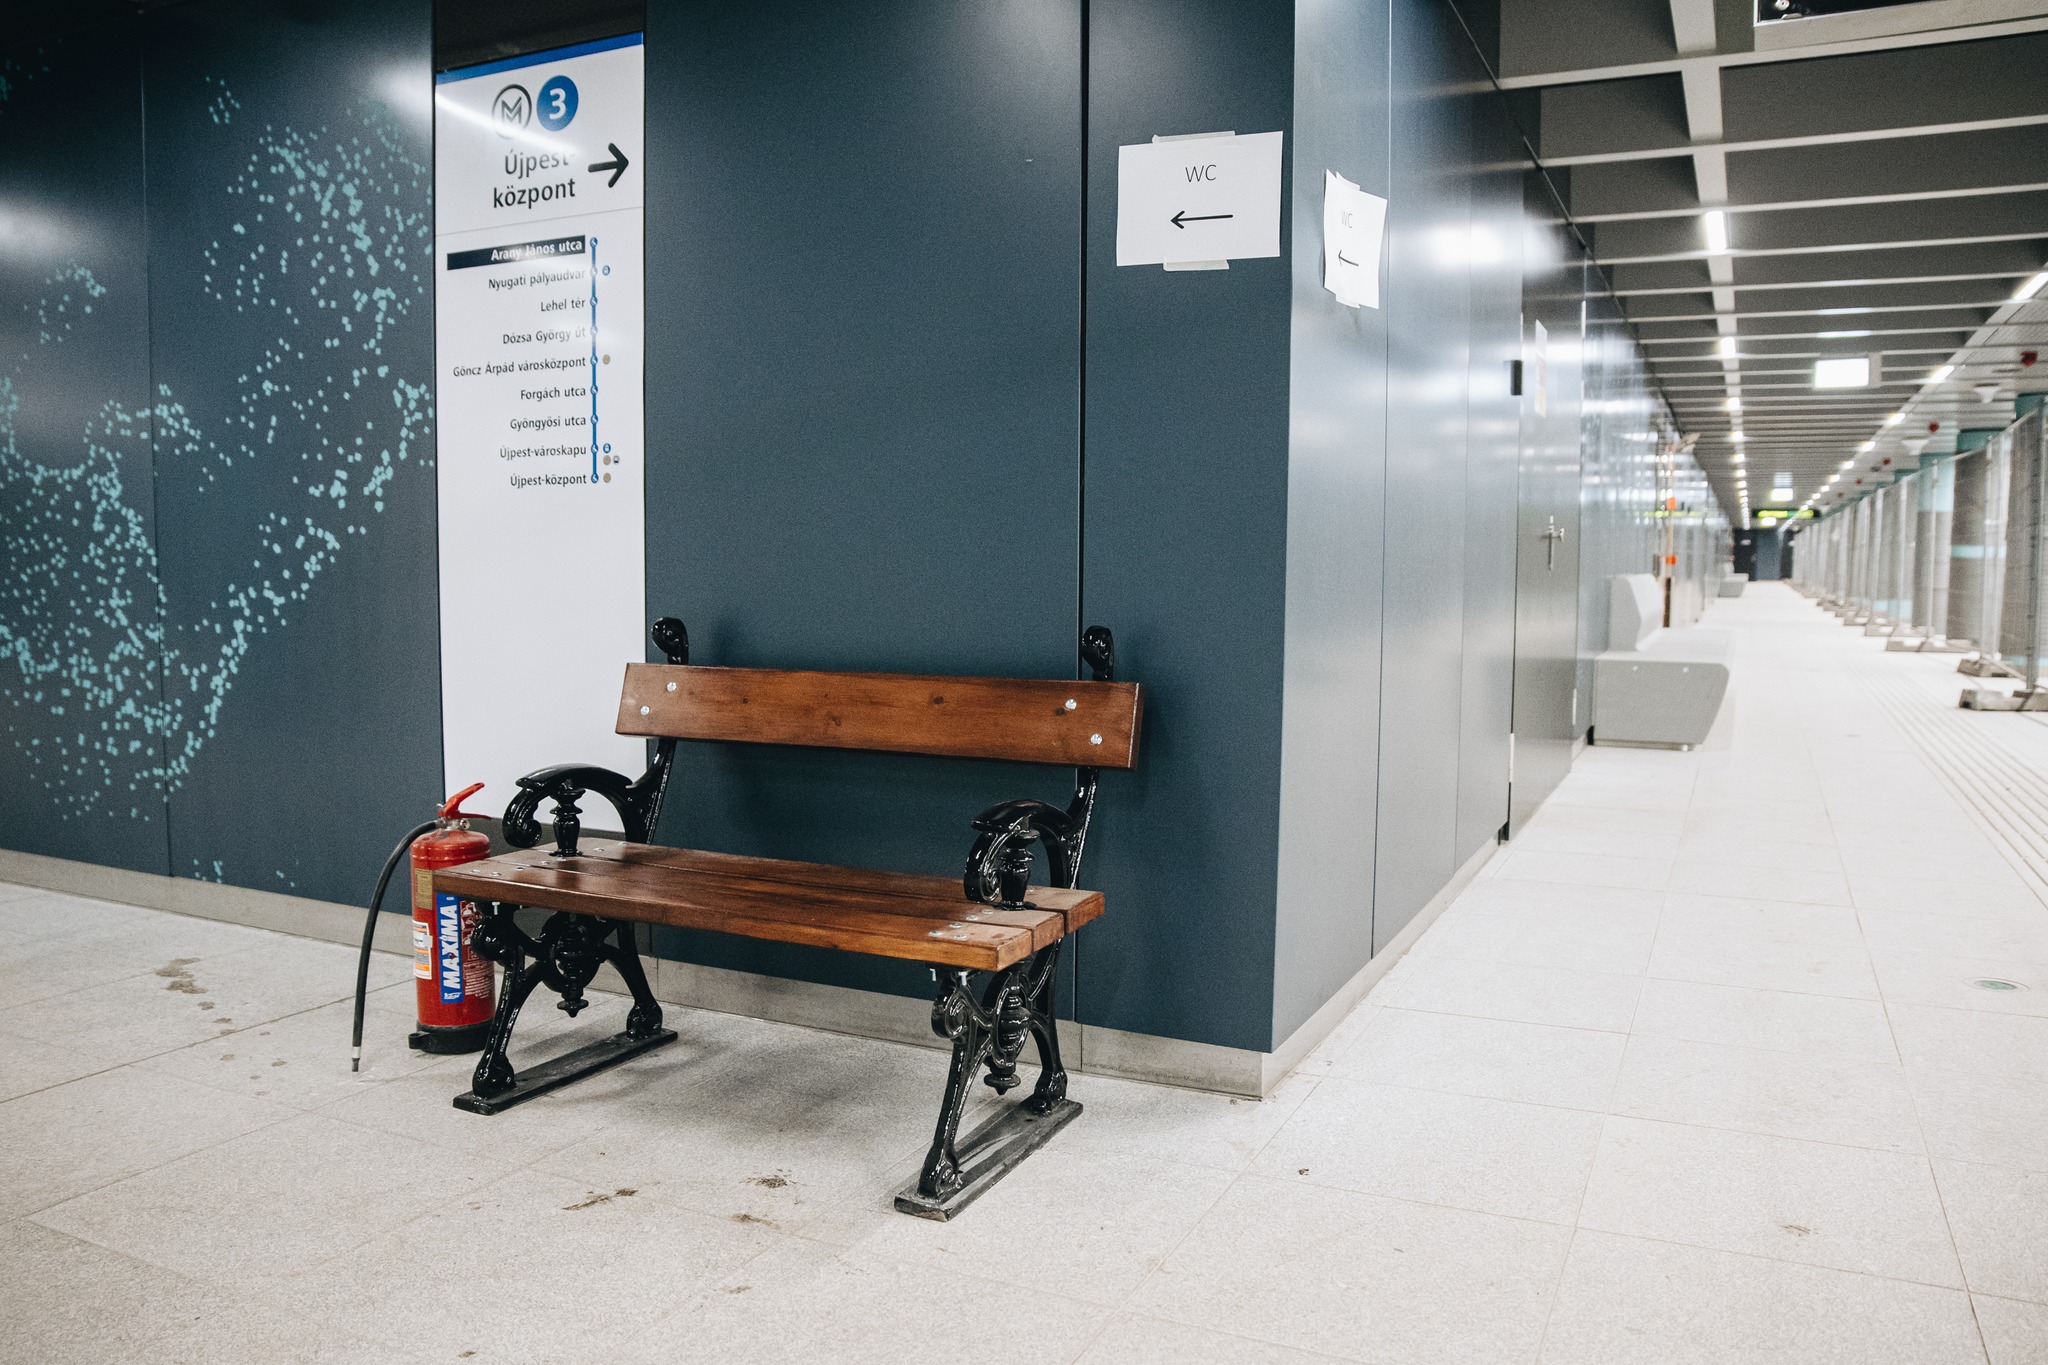 Képeken a felújított Arany János utcai metróállomás – Kányádi Sándor padja is visszakerült eredeti helyére